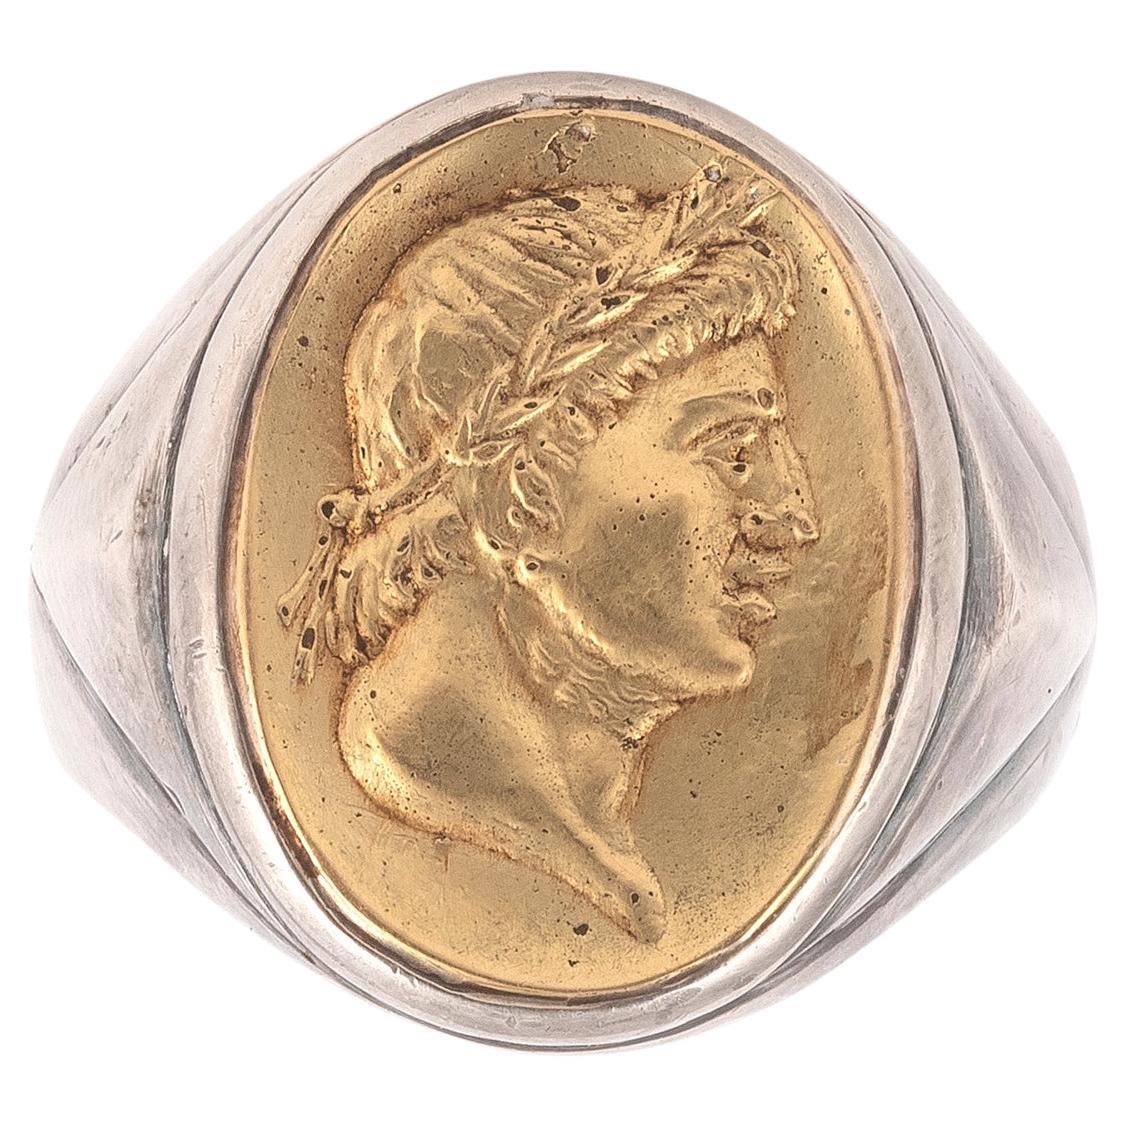 Darstellung eines römischen Kaisers Gaius Julius Caesar, 18kt Gelbgold und Silber.
Obere Größe 21mm x 18mm
Ring Größe 10 
Bruttogewicht: 21gr.